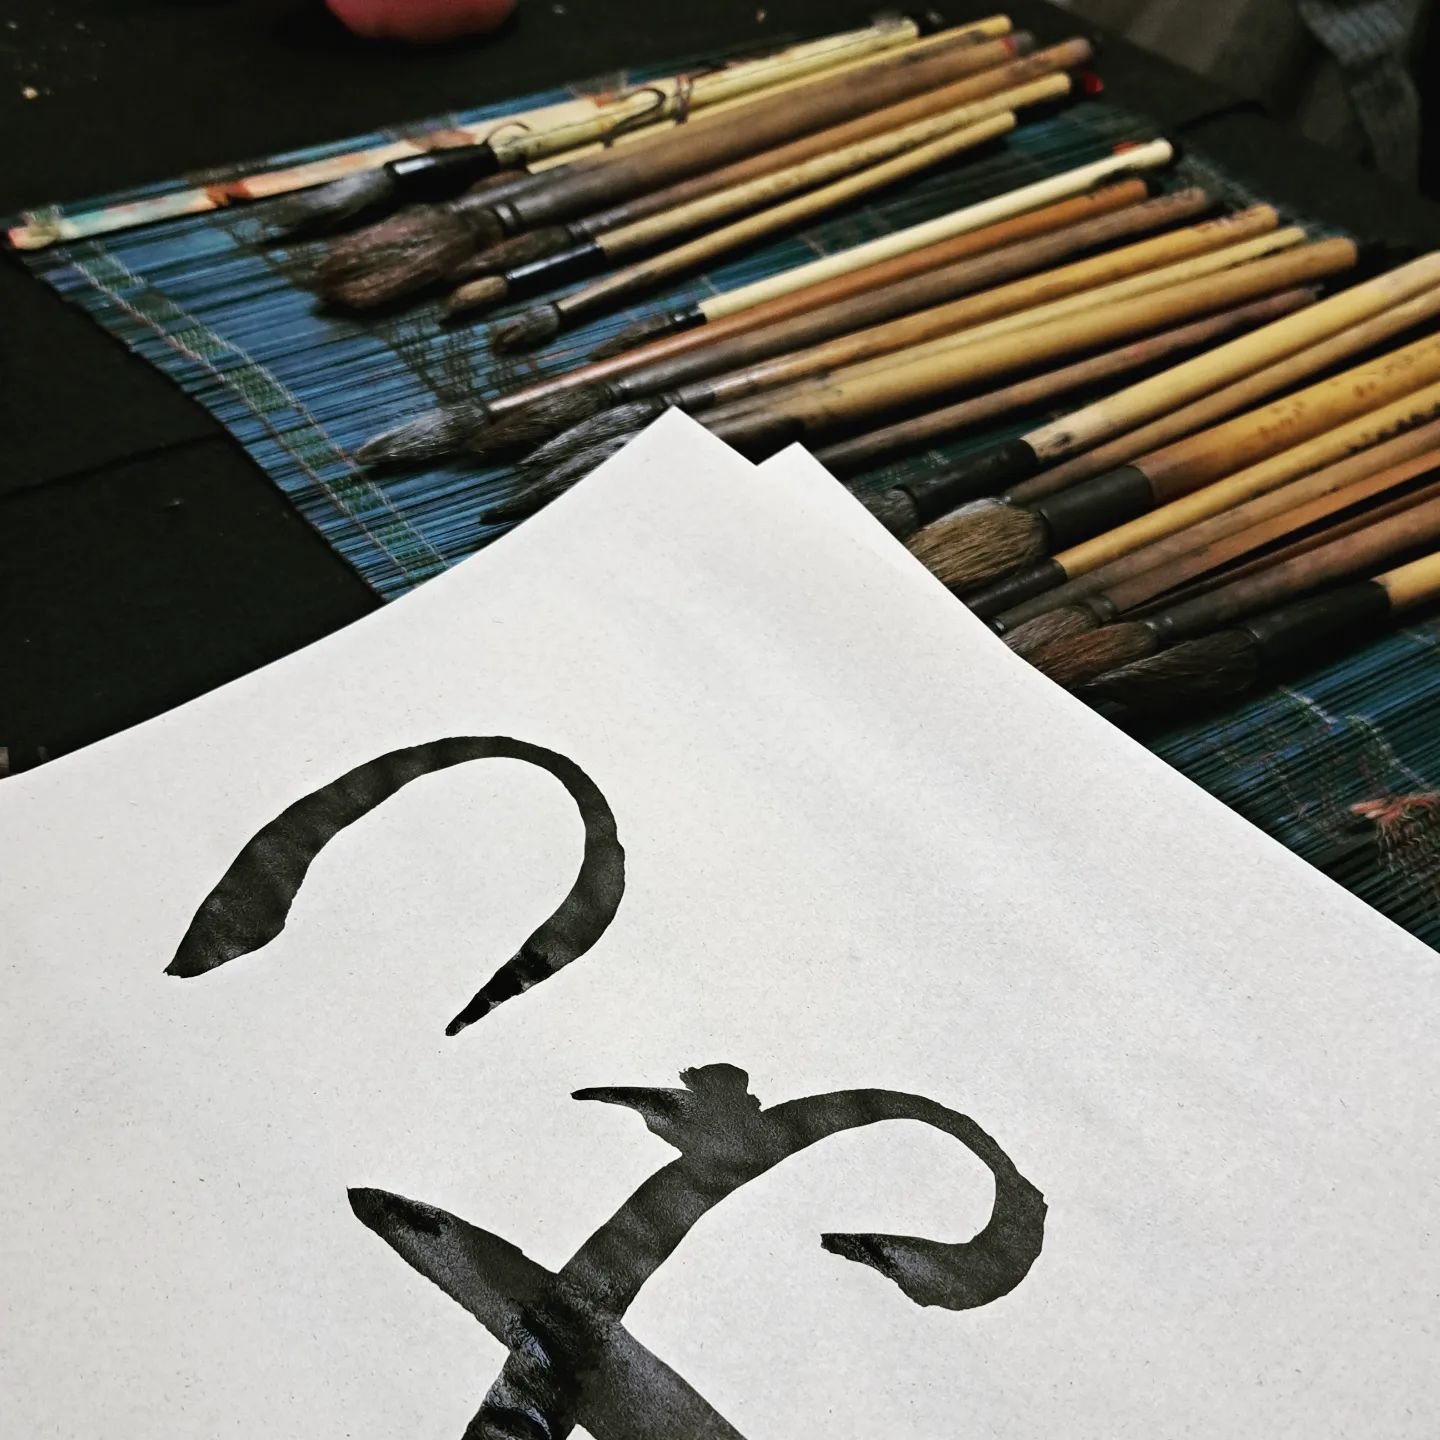 Nuevos saberes. #shodo
.
.
.
.
.
.
#caligrafia #筆文字 #筆耕 #かきかた #shodo #calligraphy #japanesecalligraphy #caligrafiajaponesa #caligrafiaartistica